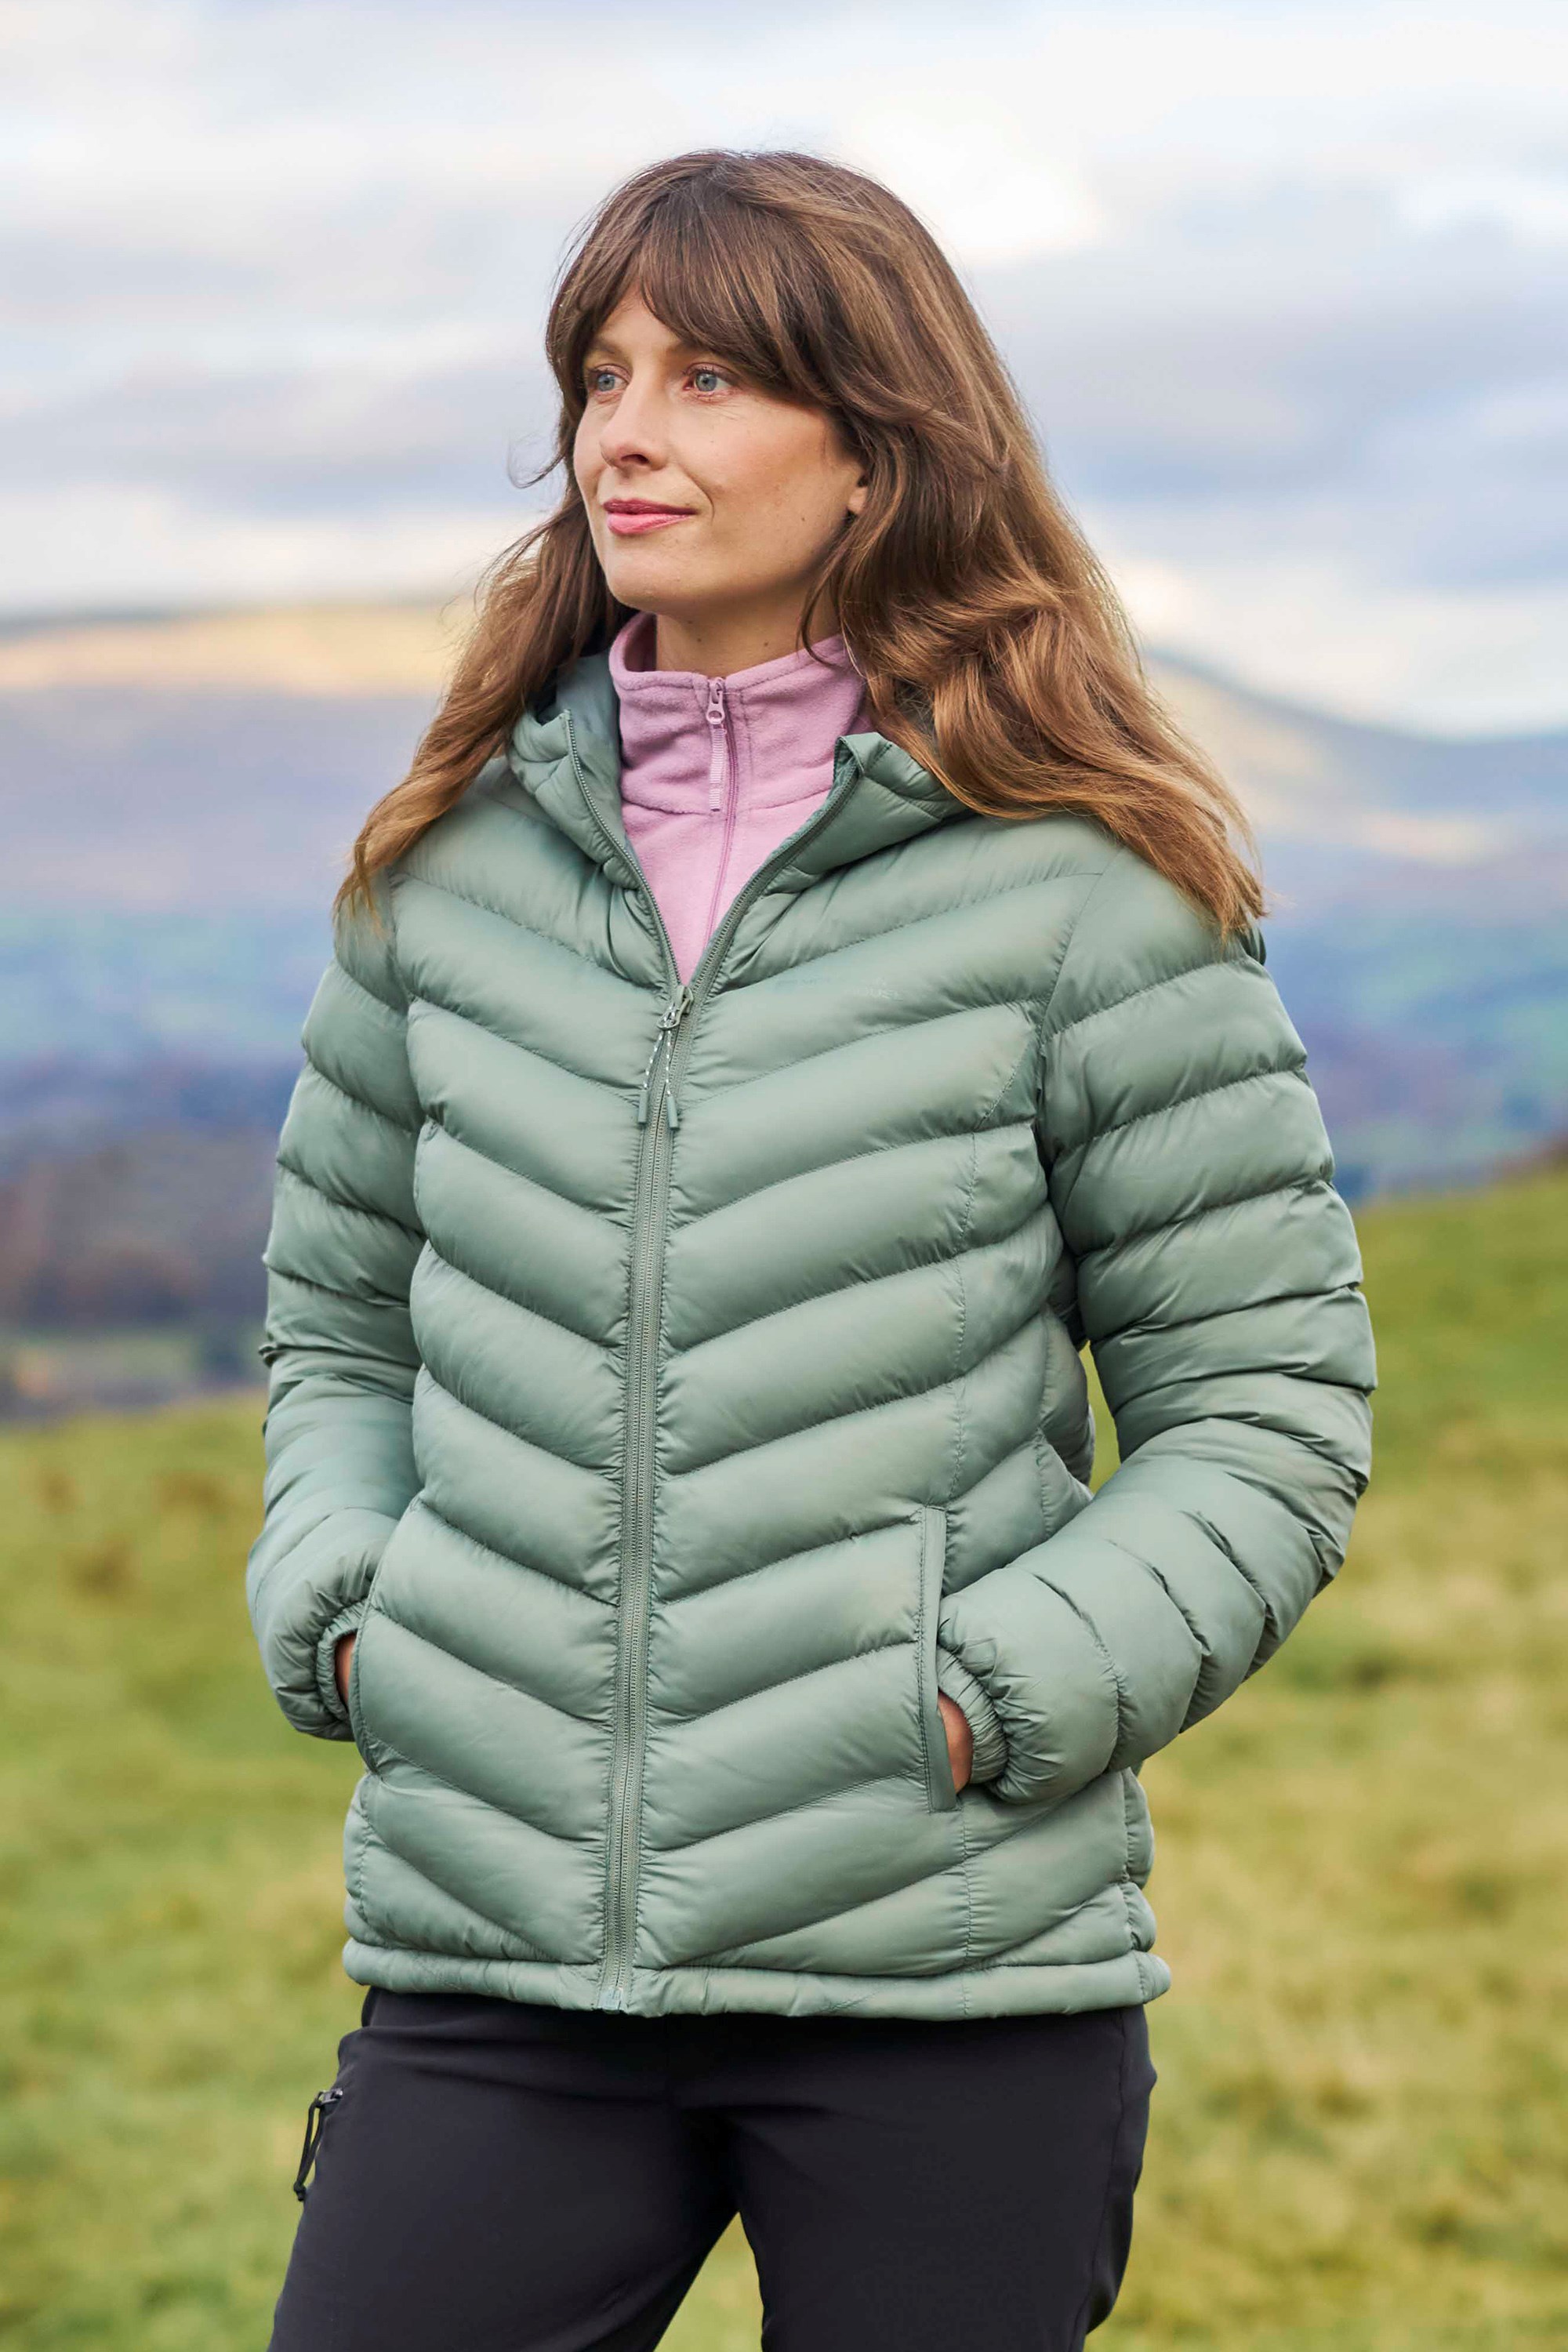 Women's Outdoor Jackets & Coats